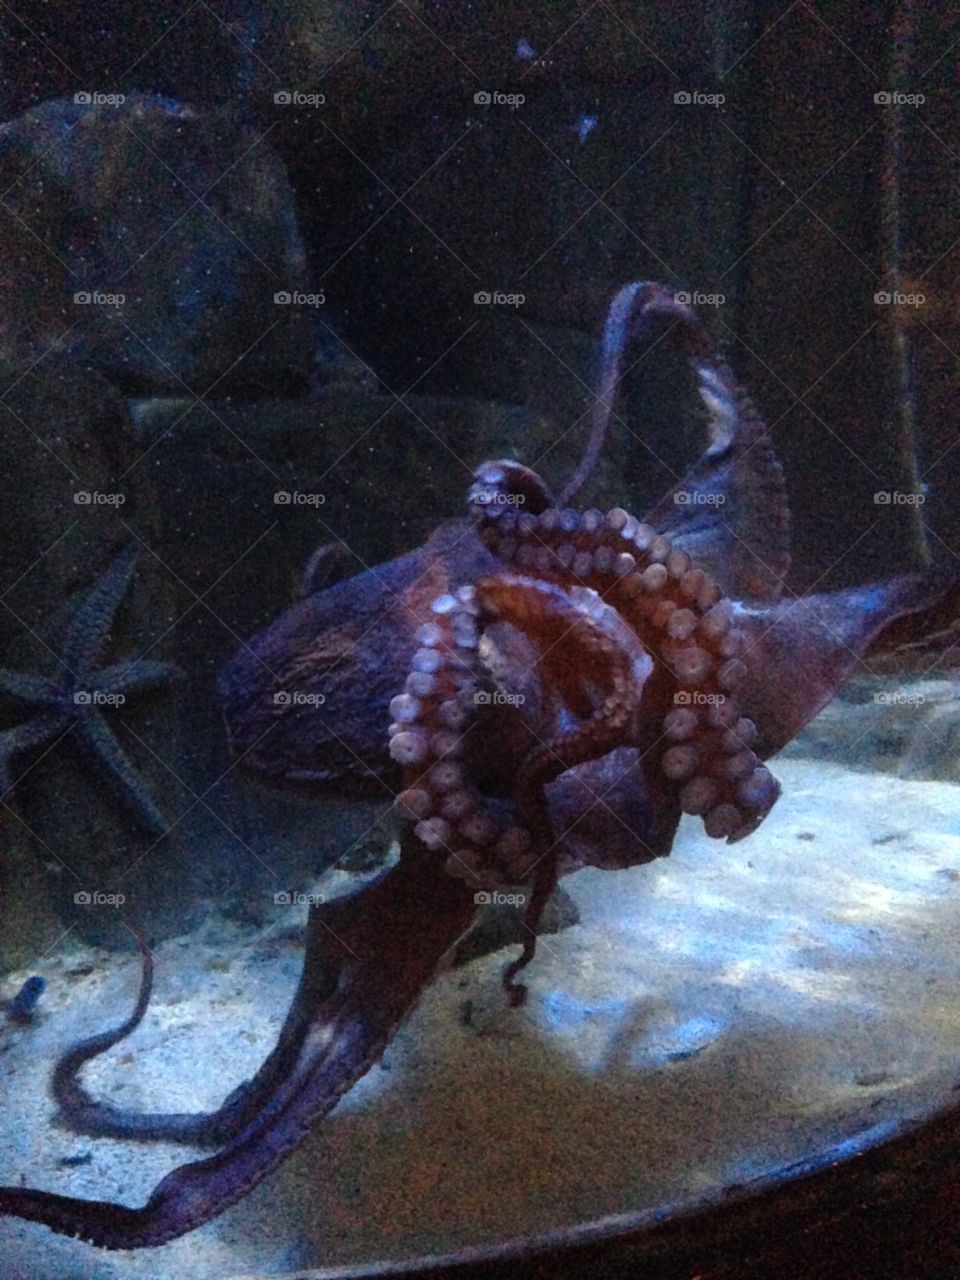 Large octopus in his tank at blue planet aquarium 